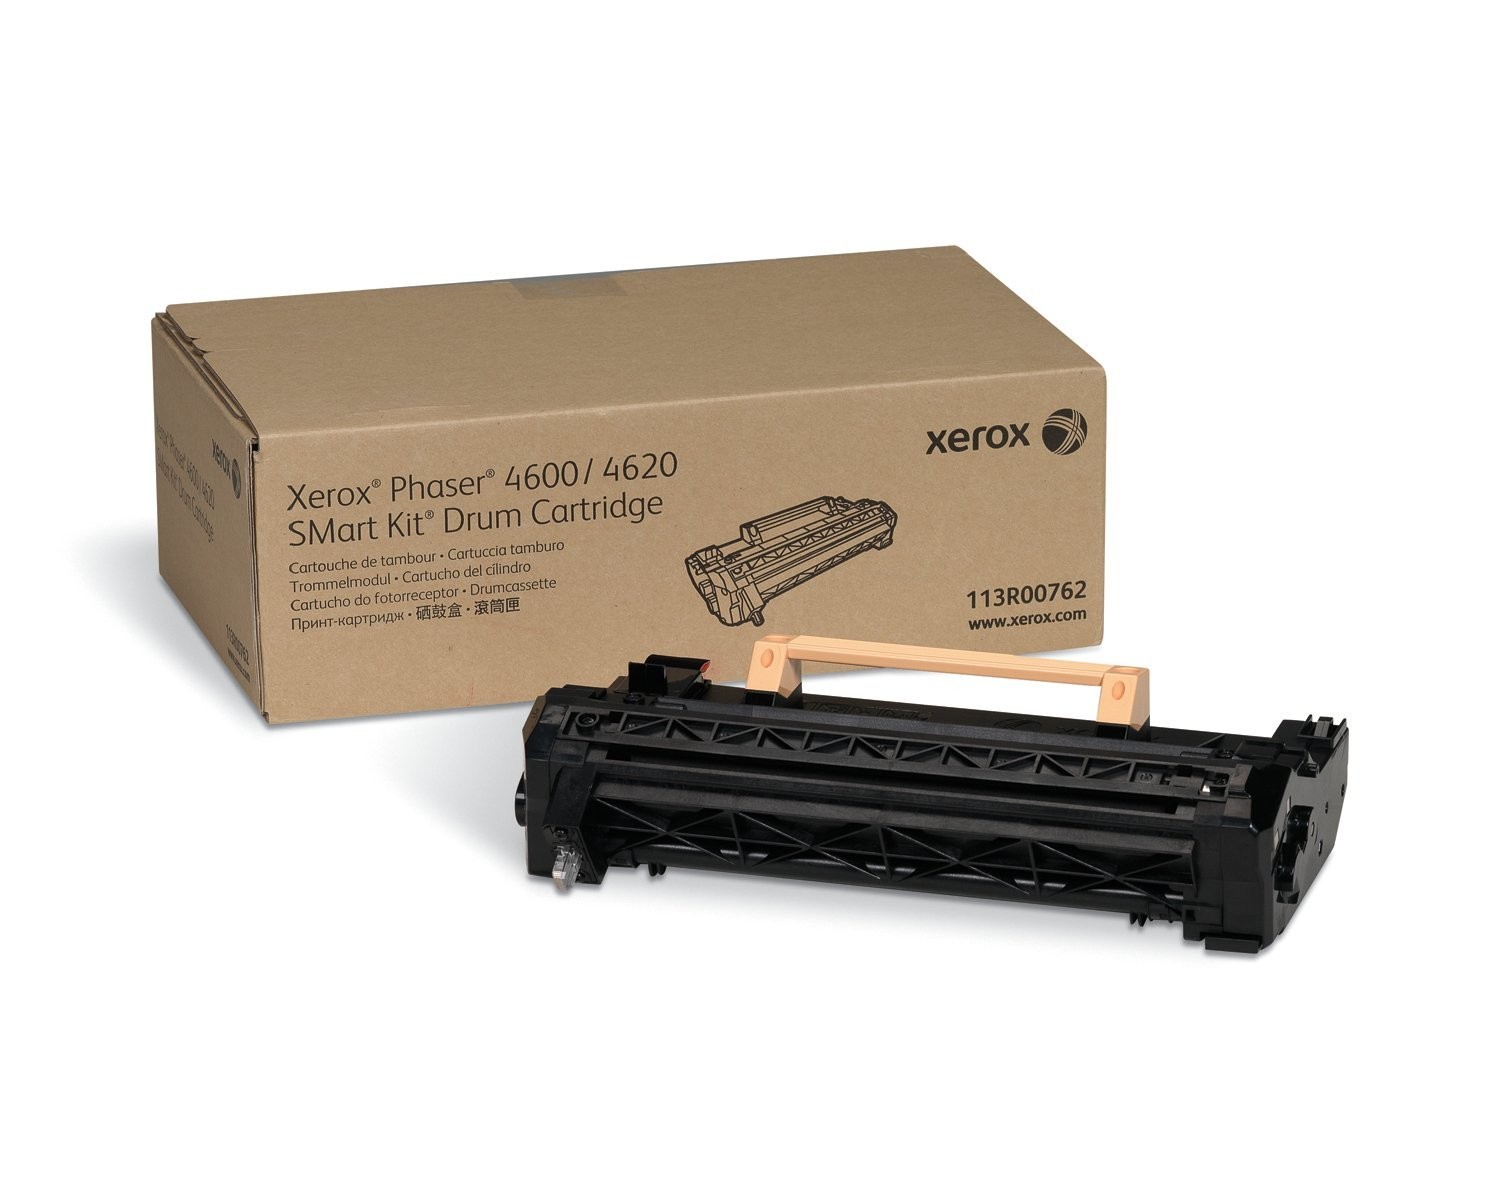 Xerox Imaging Drum Toner Cartridge For Phaser 4600 4620 4622 Black 113R00762